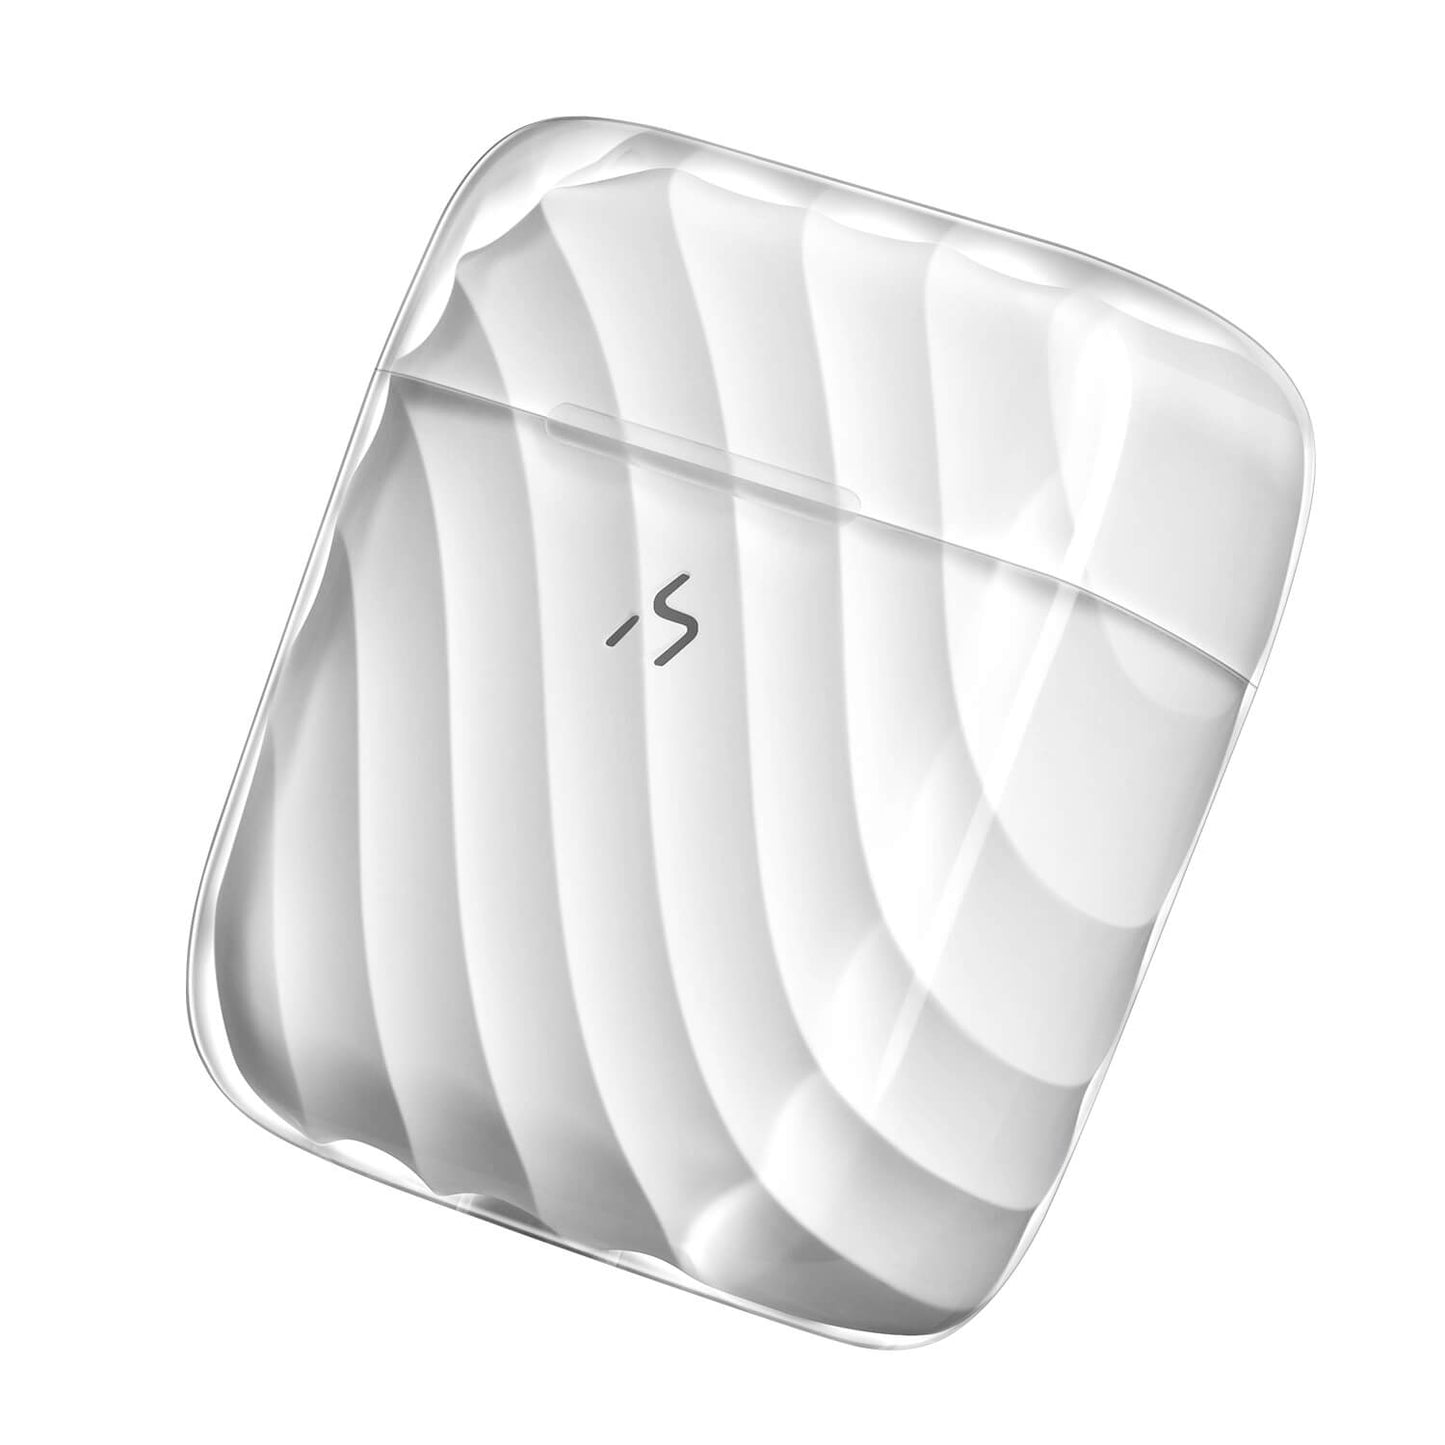 HAKII ICE Lite Auriculares inalámbricos de baja latencia para Android y iPhone (Blanco)